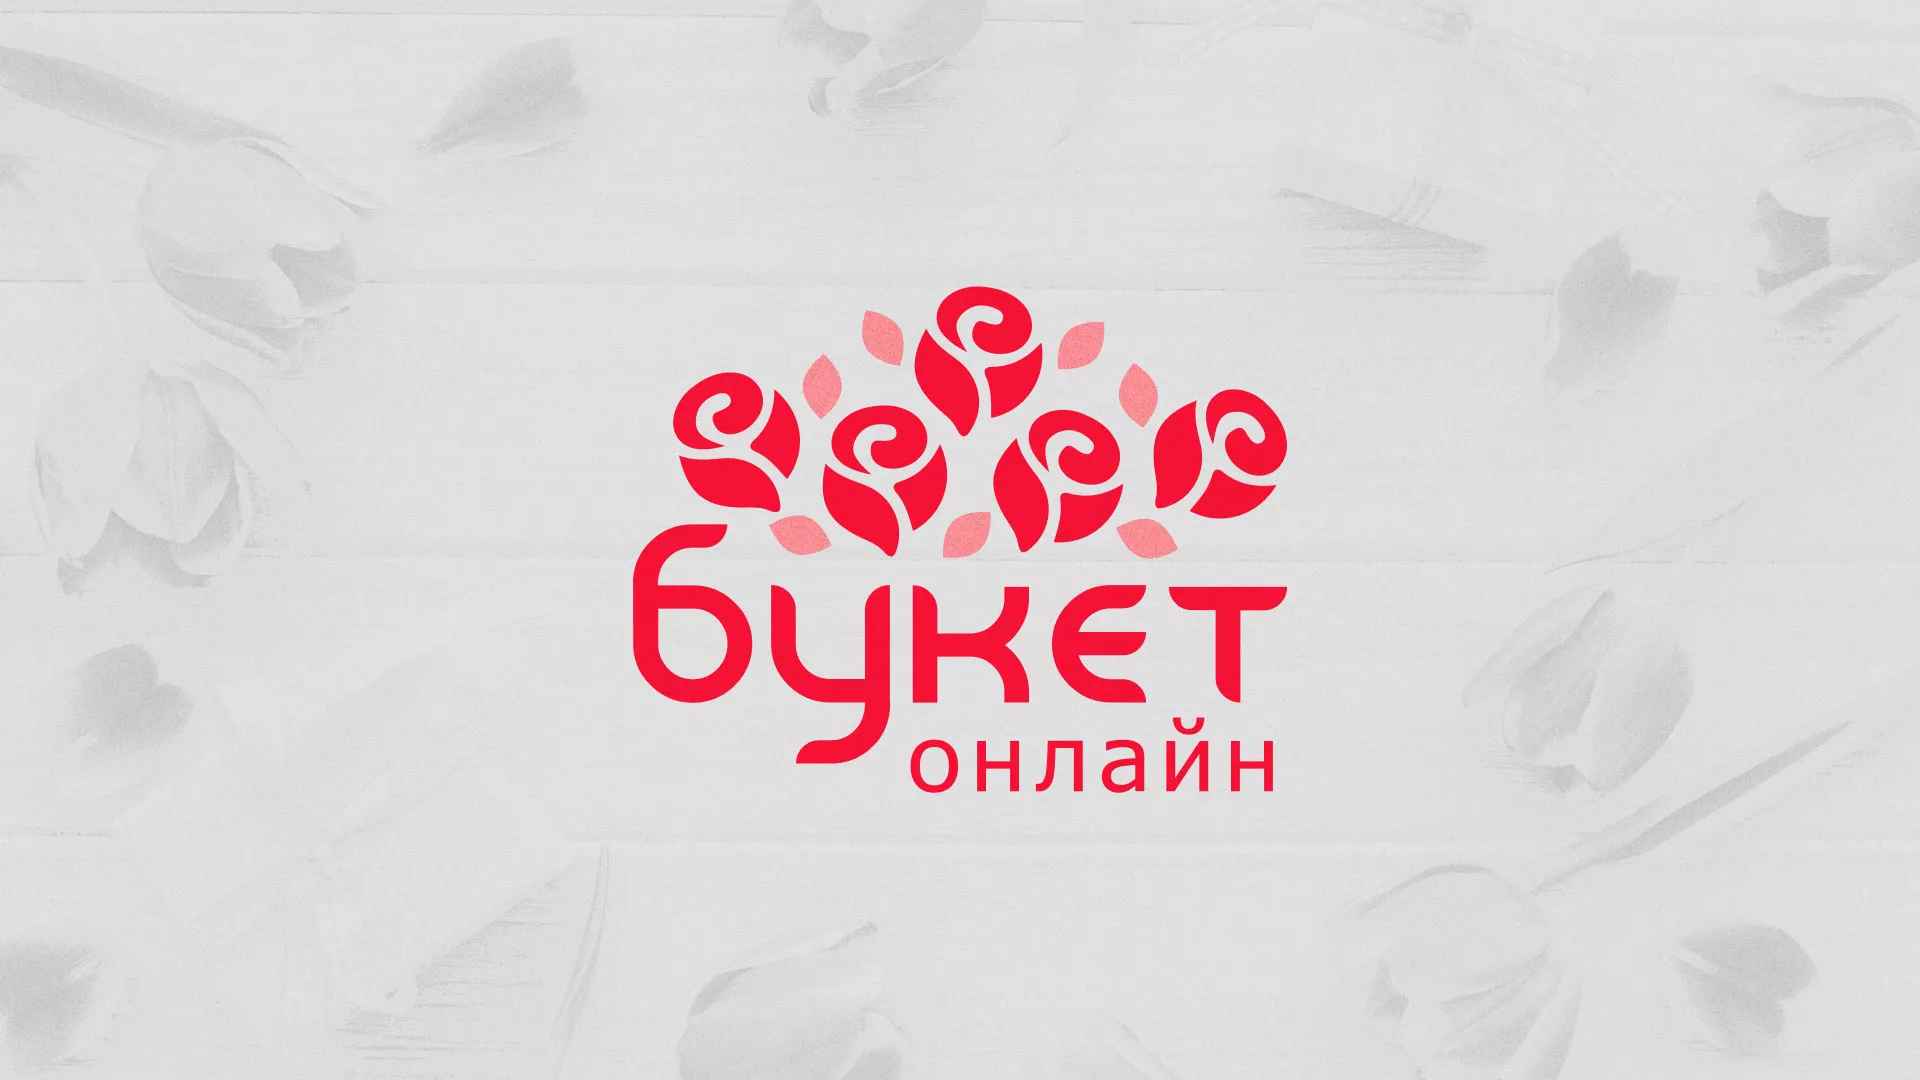 Создание интернет-магазина «Букет-онлайн» по цветам в Лысково